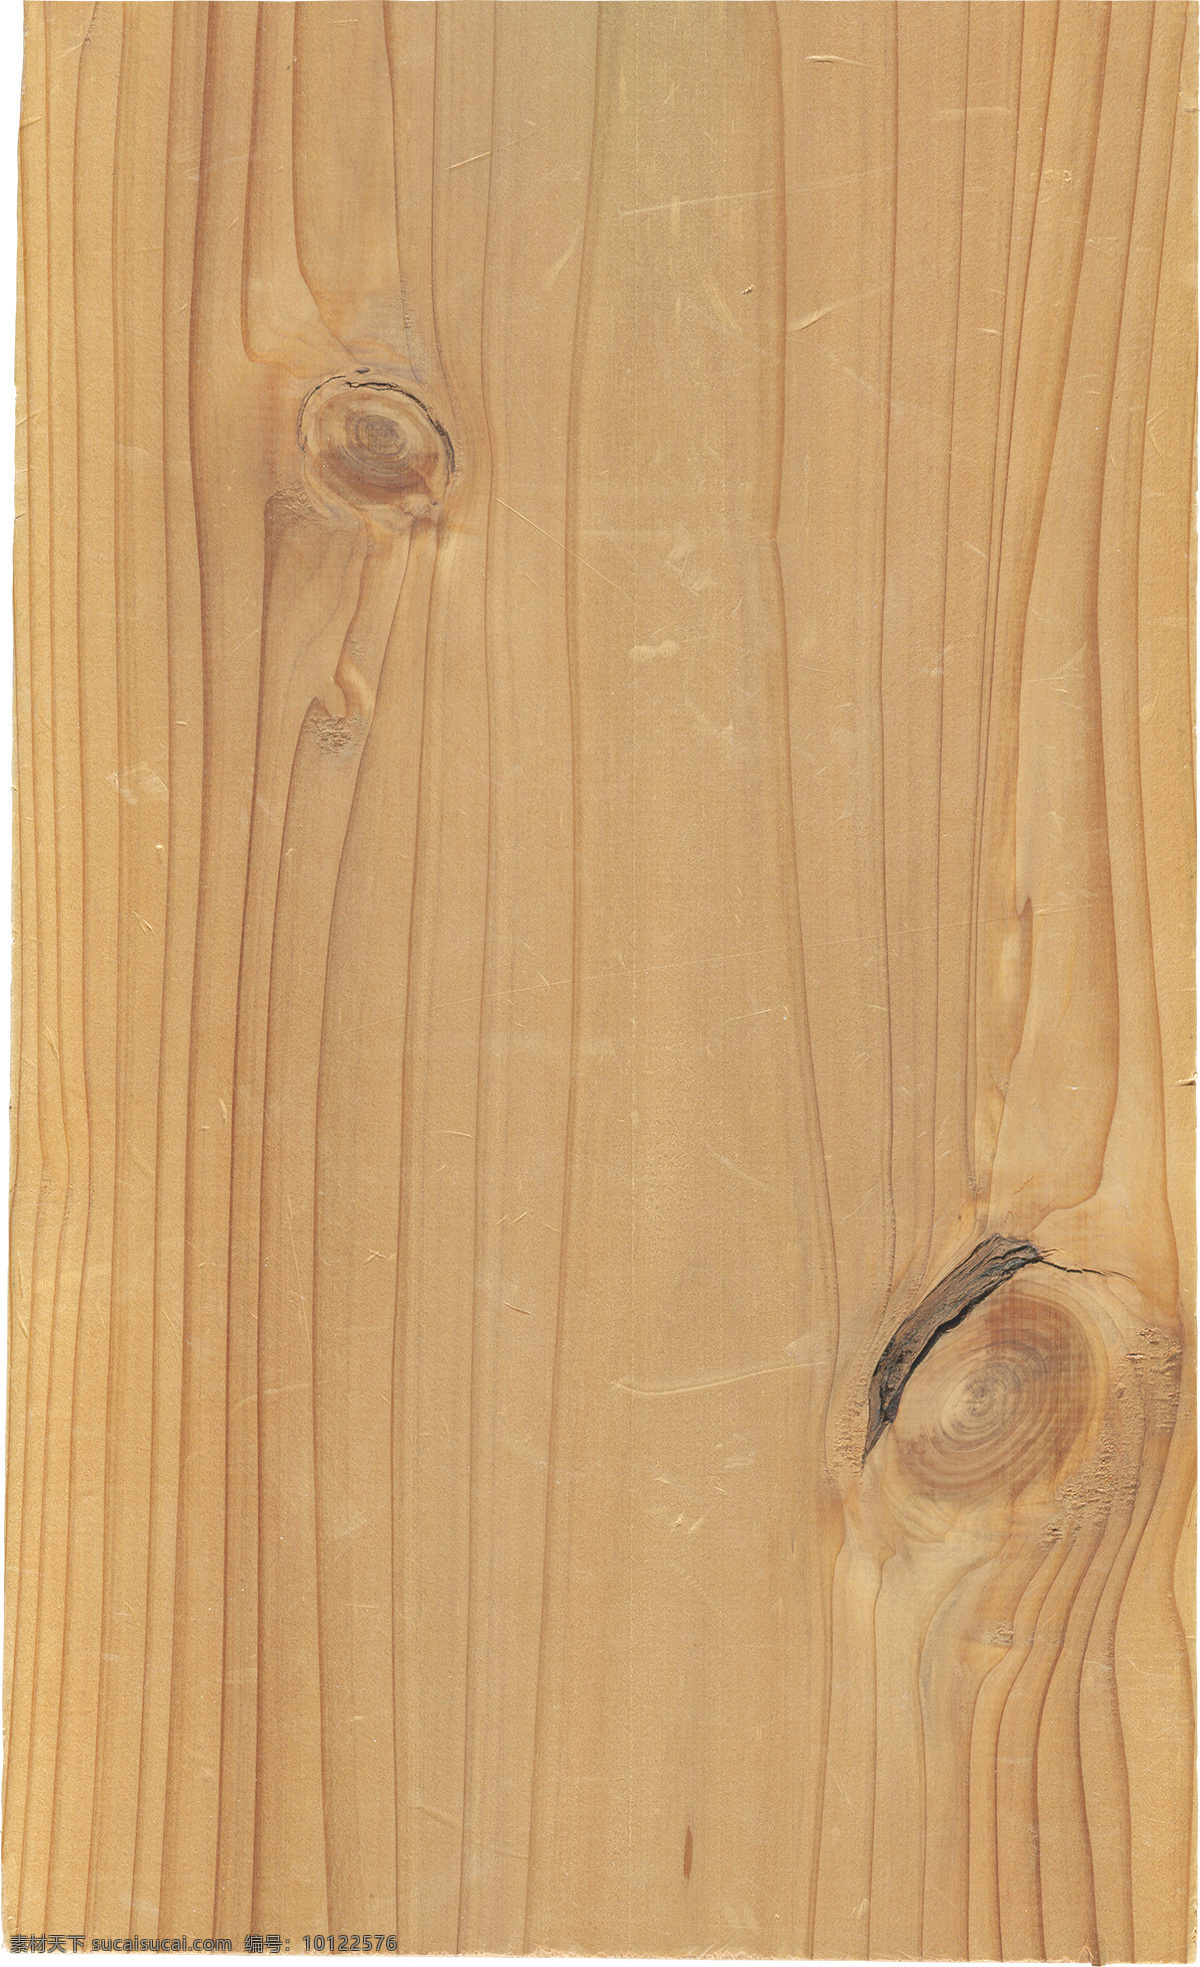 木纹材质 木纹 木质 材质 质感 木材 木头 纹理 壁纸 背景